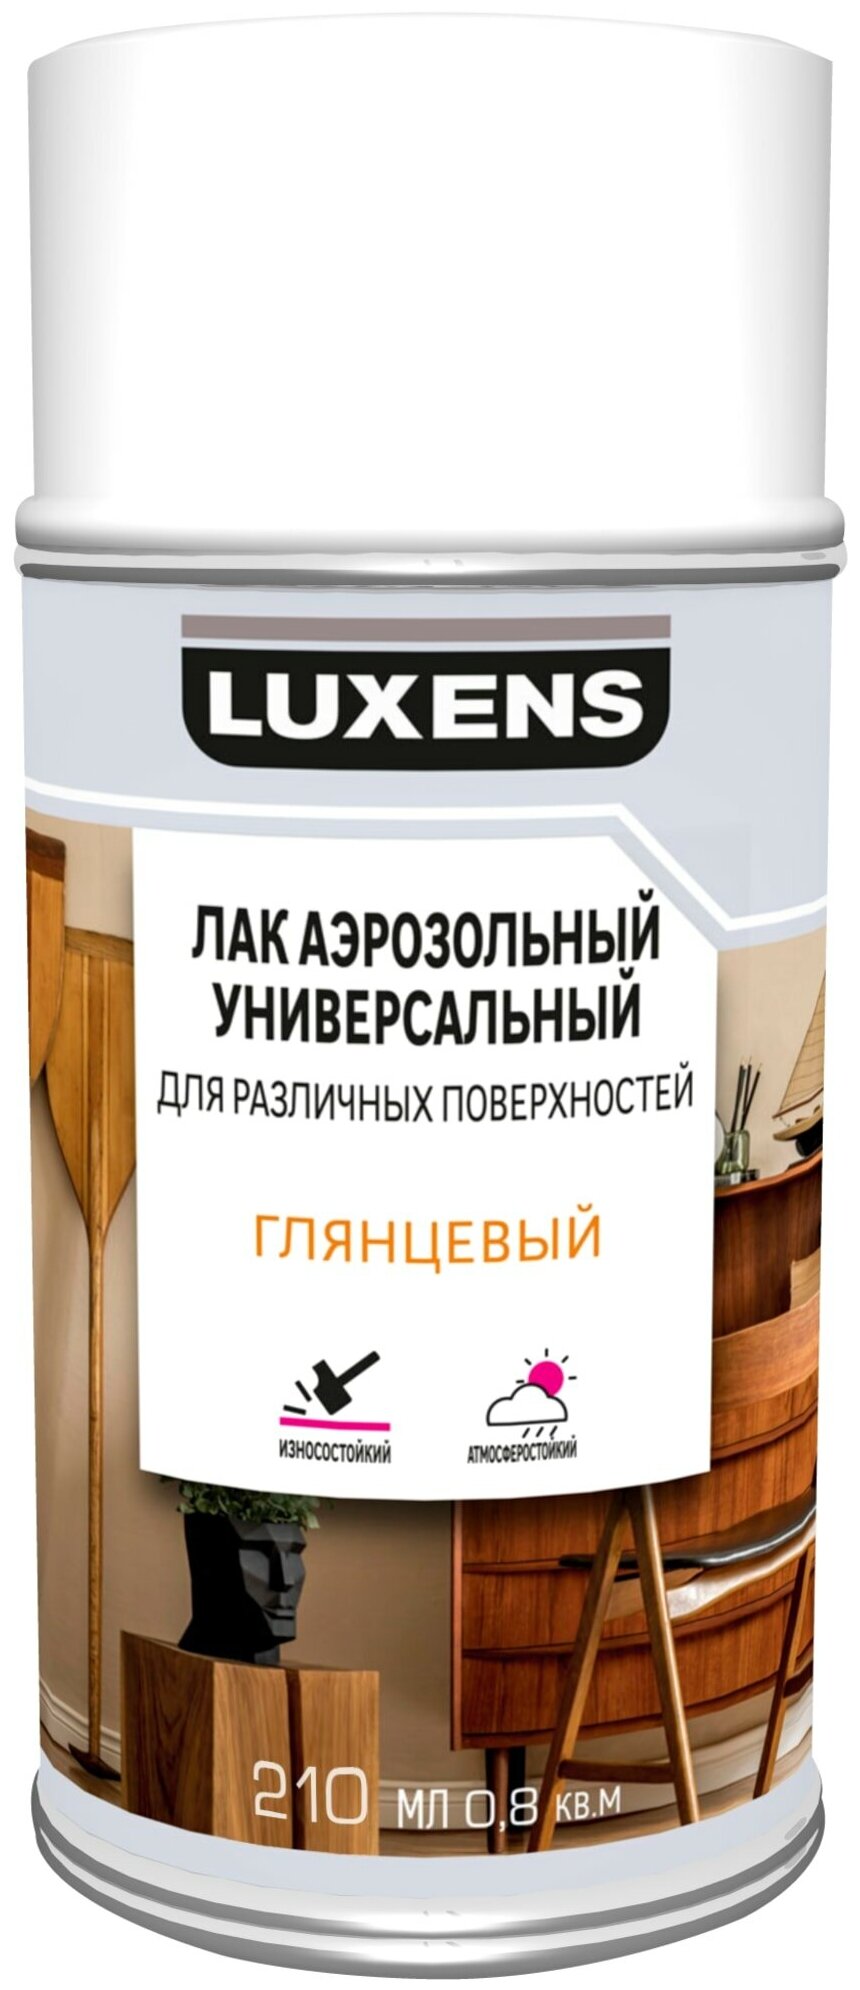 Лак Luxens универсальный для различных поверхностей глянцевый